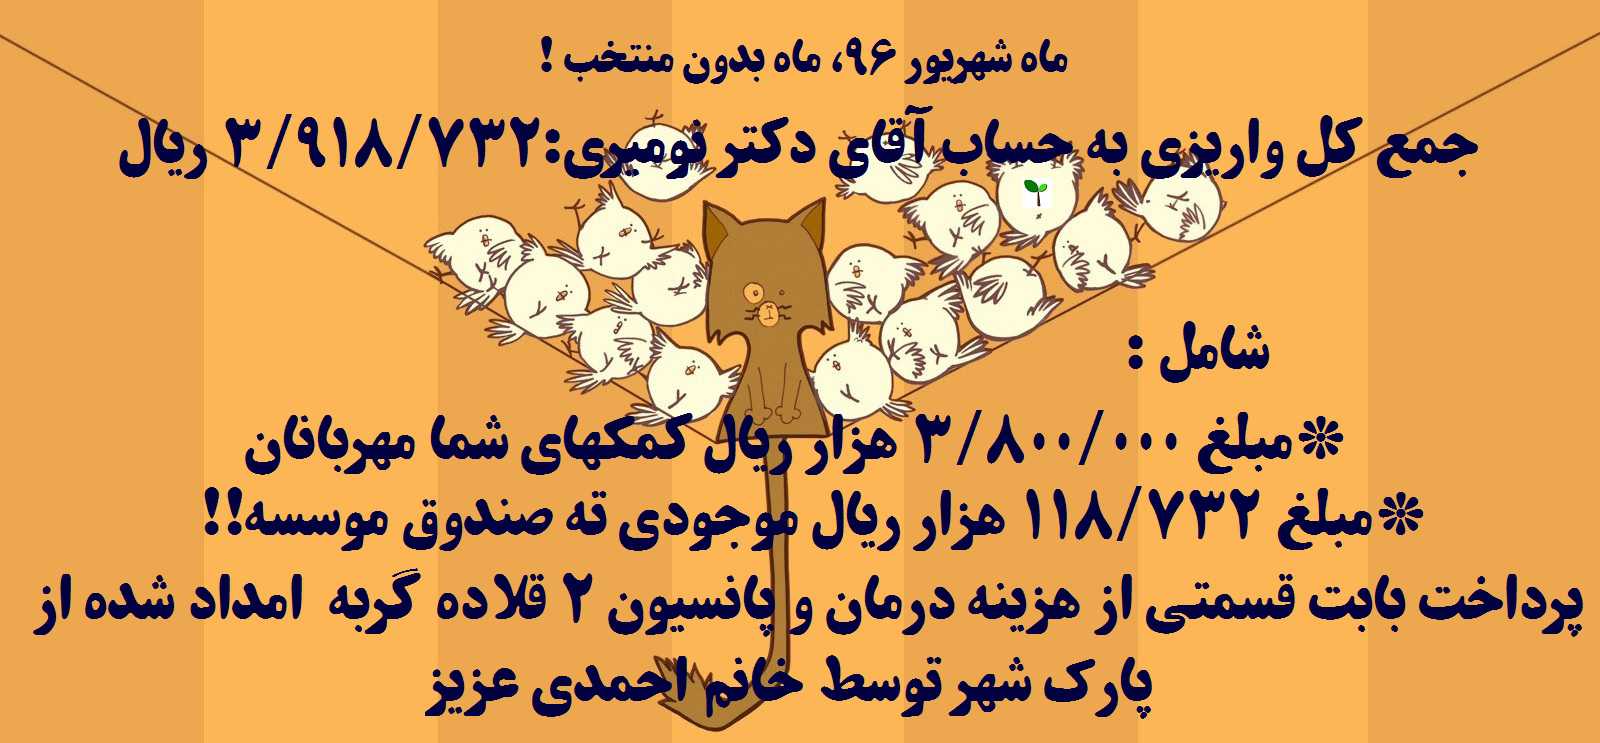 پرداخت  قسمتی از هزینه 2 قلاده گربه امداد شده از پارک شهر تهران